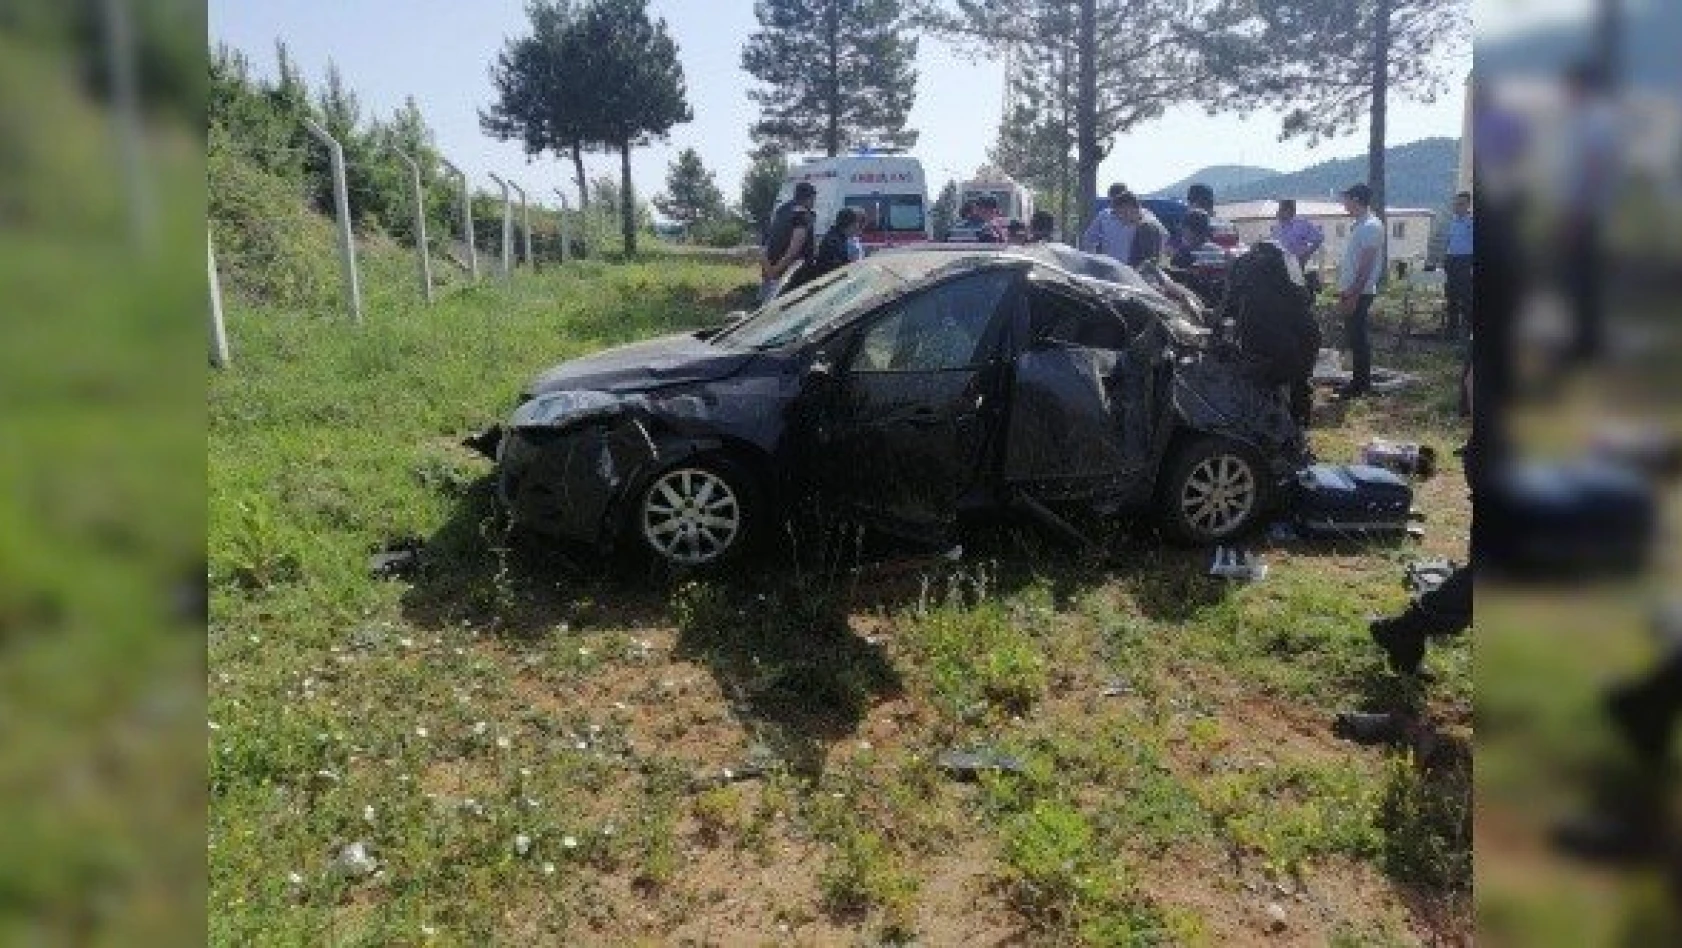 Kastamonu'daki otomobil kazasında 1'i çocuk 5 kişi yaralandı